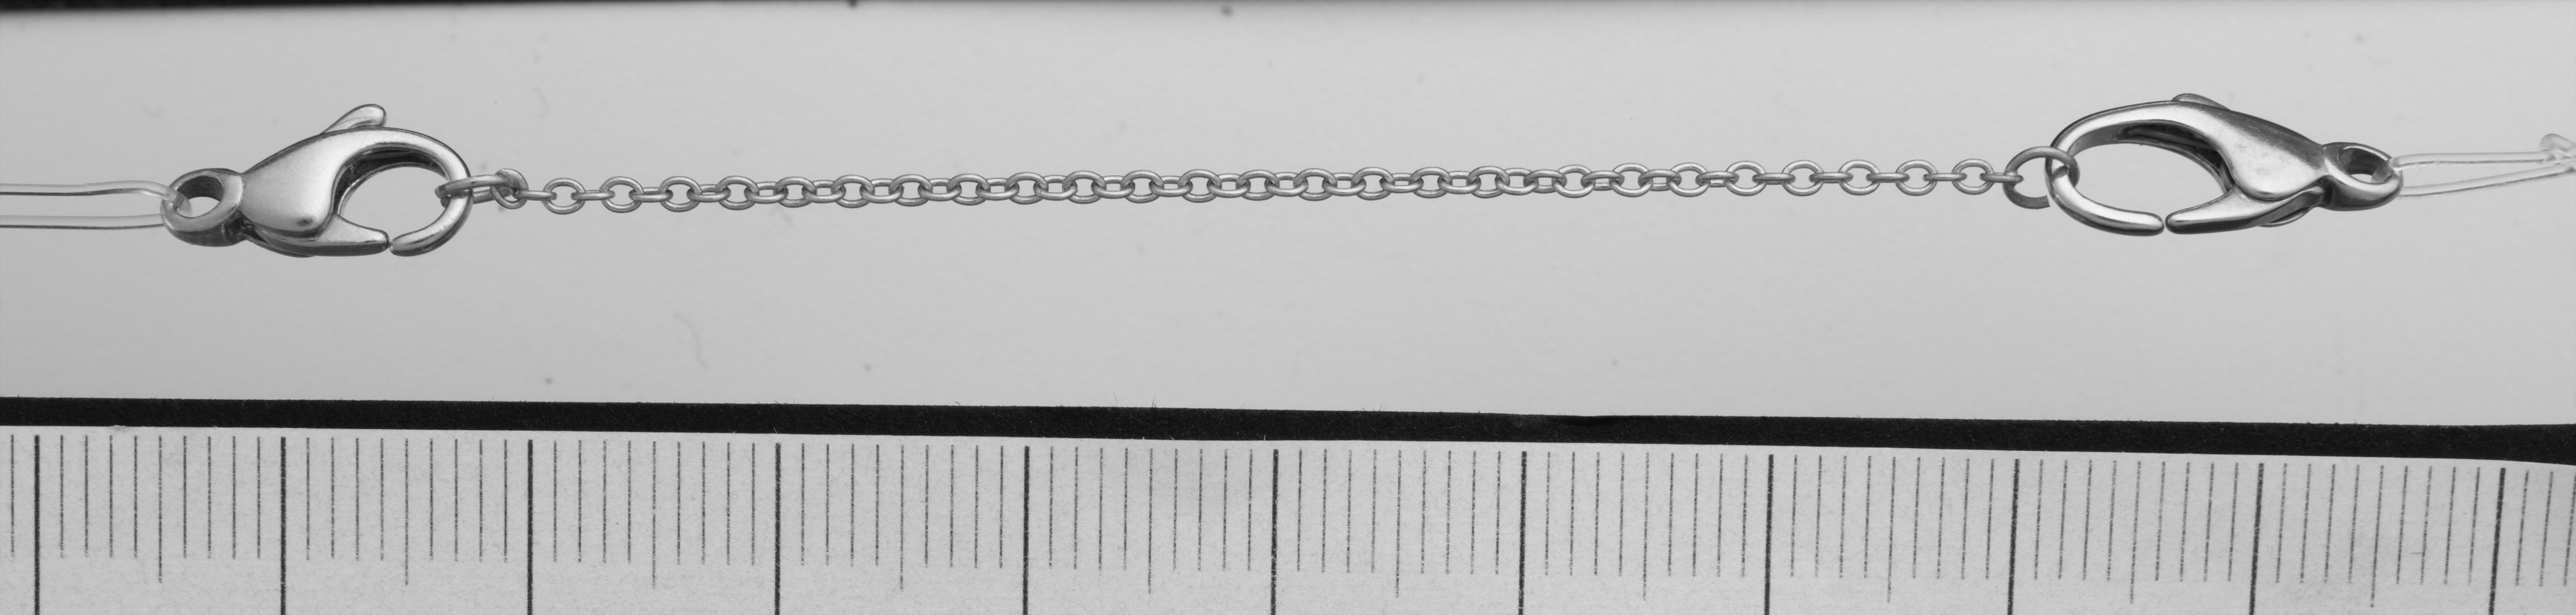 veiligheidsketting anker zilver 925/- lengte 70,00mm, met open bindringen